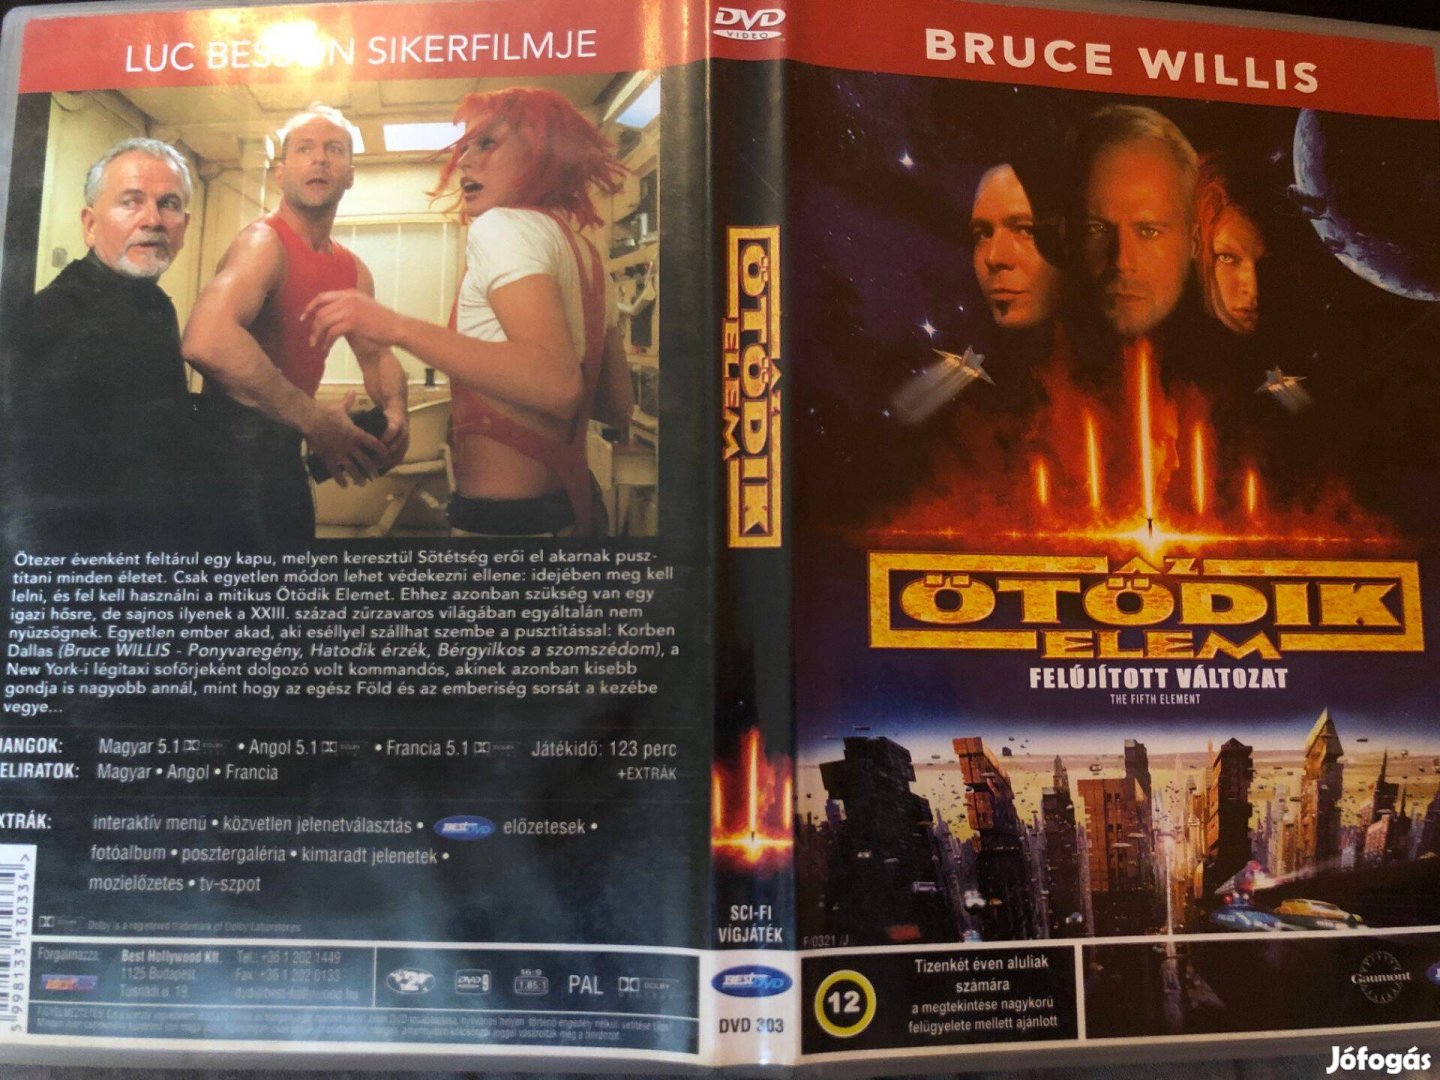 Az ötödik elem (Bruce Willis) DVD